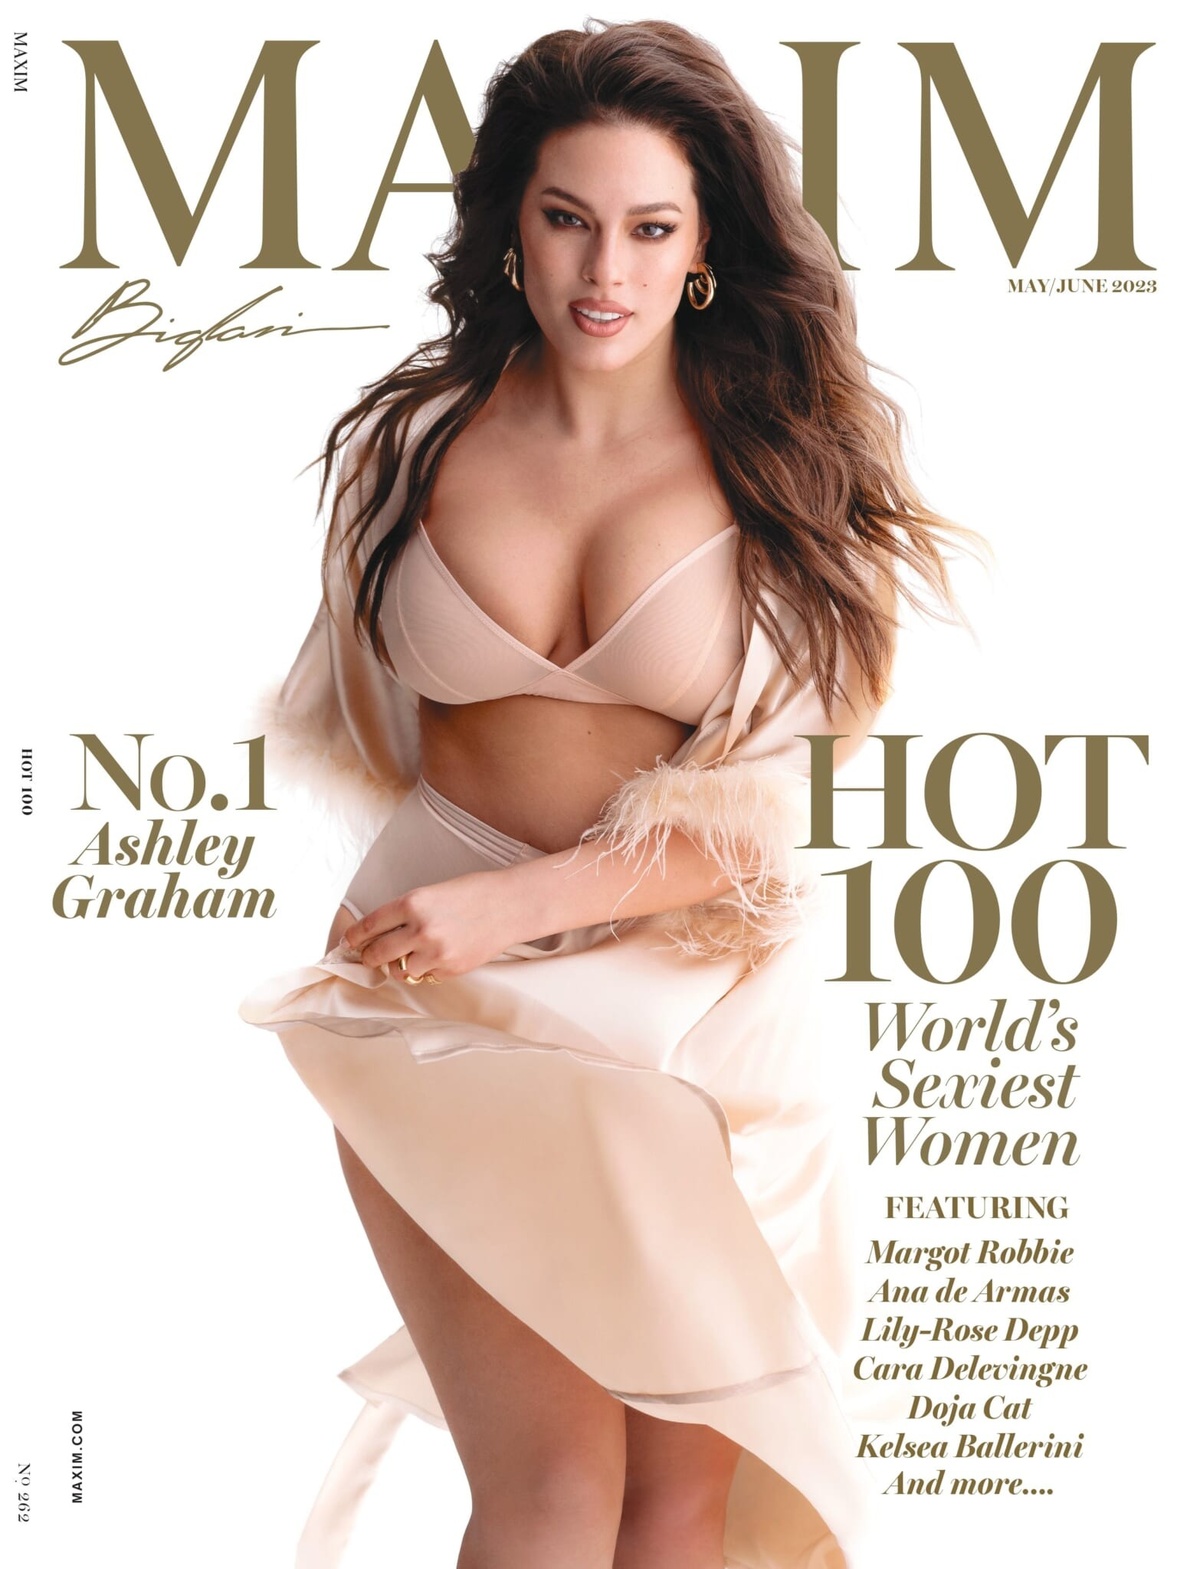 Vượt qua hàng loạt tên tuổi lớn như Margot Robbie, Cara Delevingne, Ana de Armas hay Doja Cat, người mẫu ngoại cỡ Ashley Graham đã trở thành ''Người phụ nữ gợi cảm nhất thế giới'' do tạp chí Maxim bình chọn. Cô cũng được xuất hiện trên trang bài của tạp chí số tháng 4/2023.